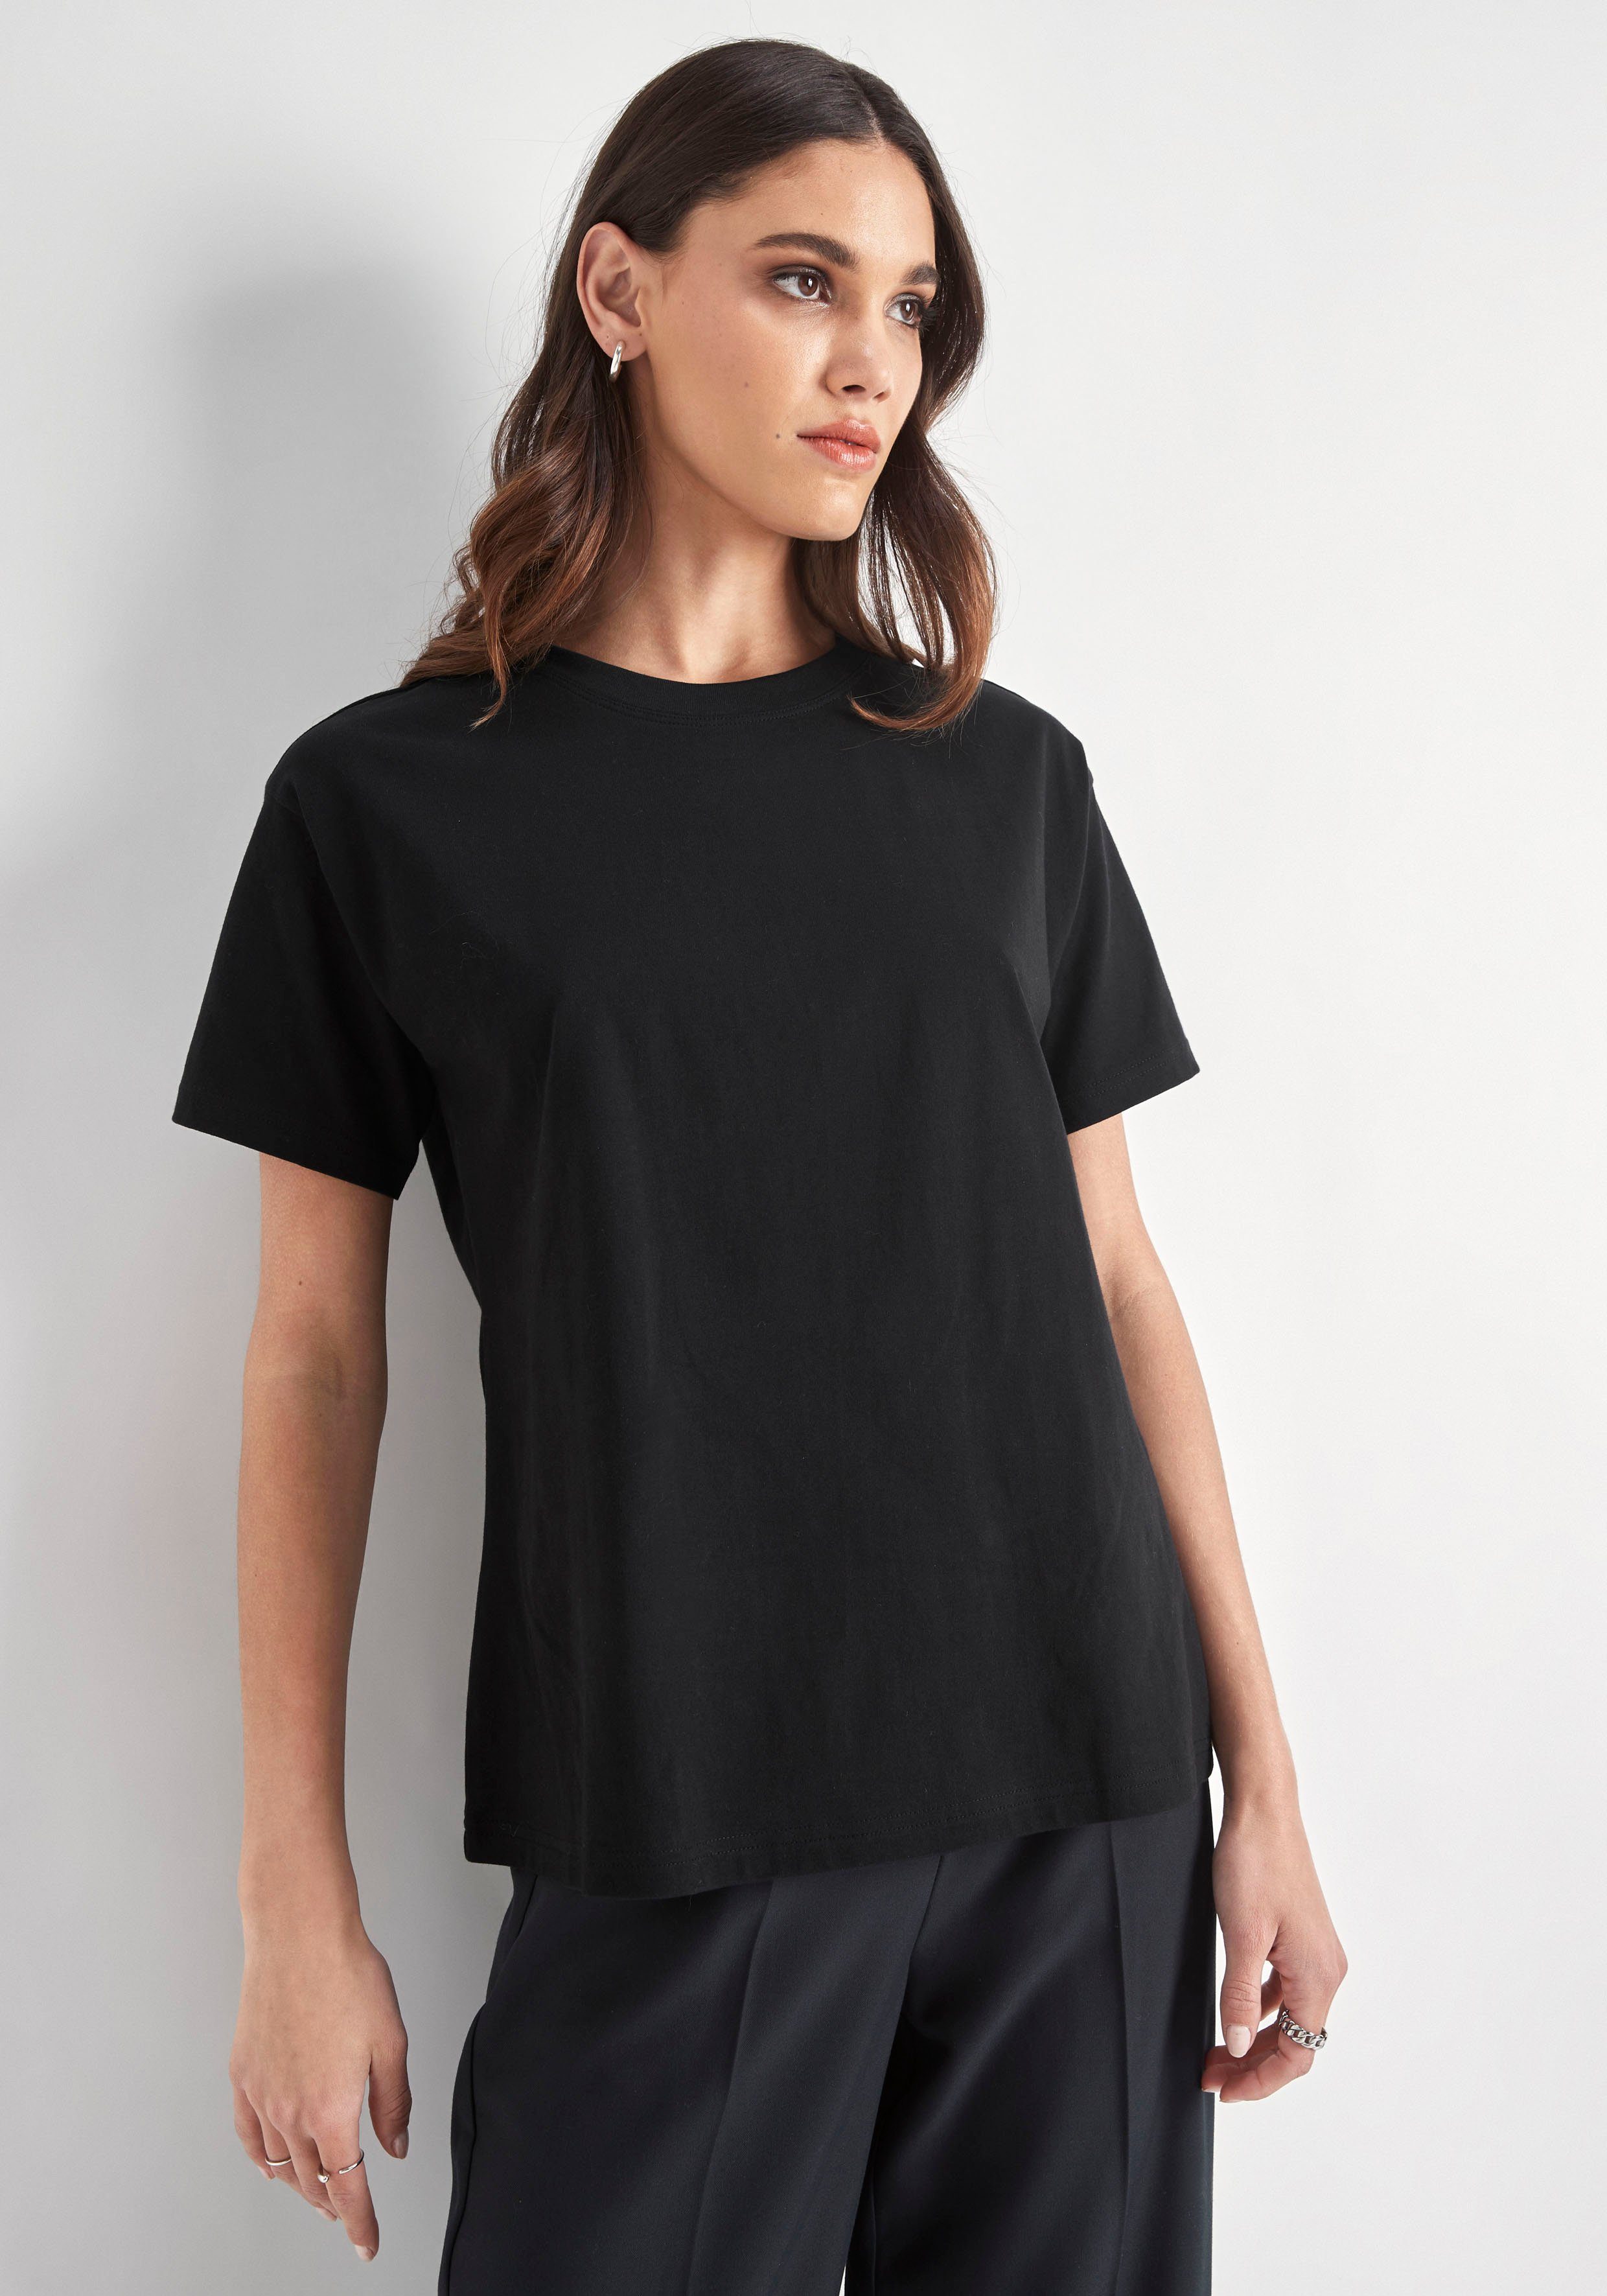 T-Shirt PARIS HECHTER schwarz mit Rundhalsausschnitt